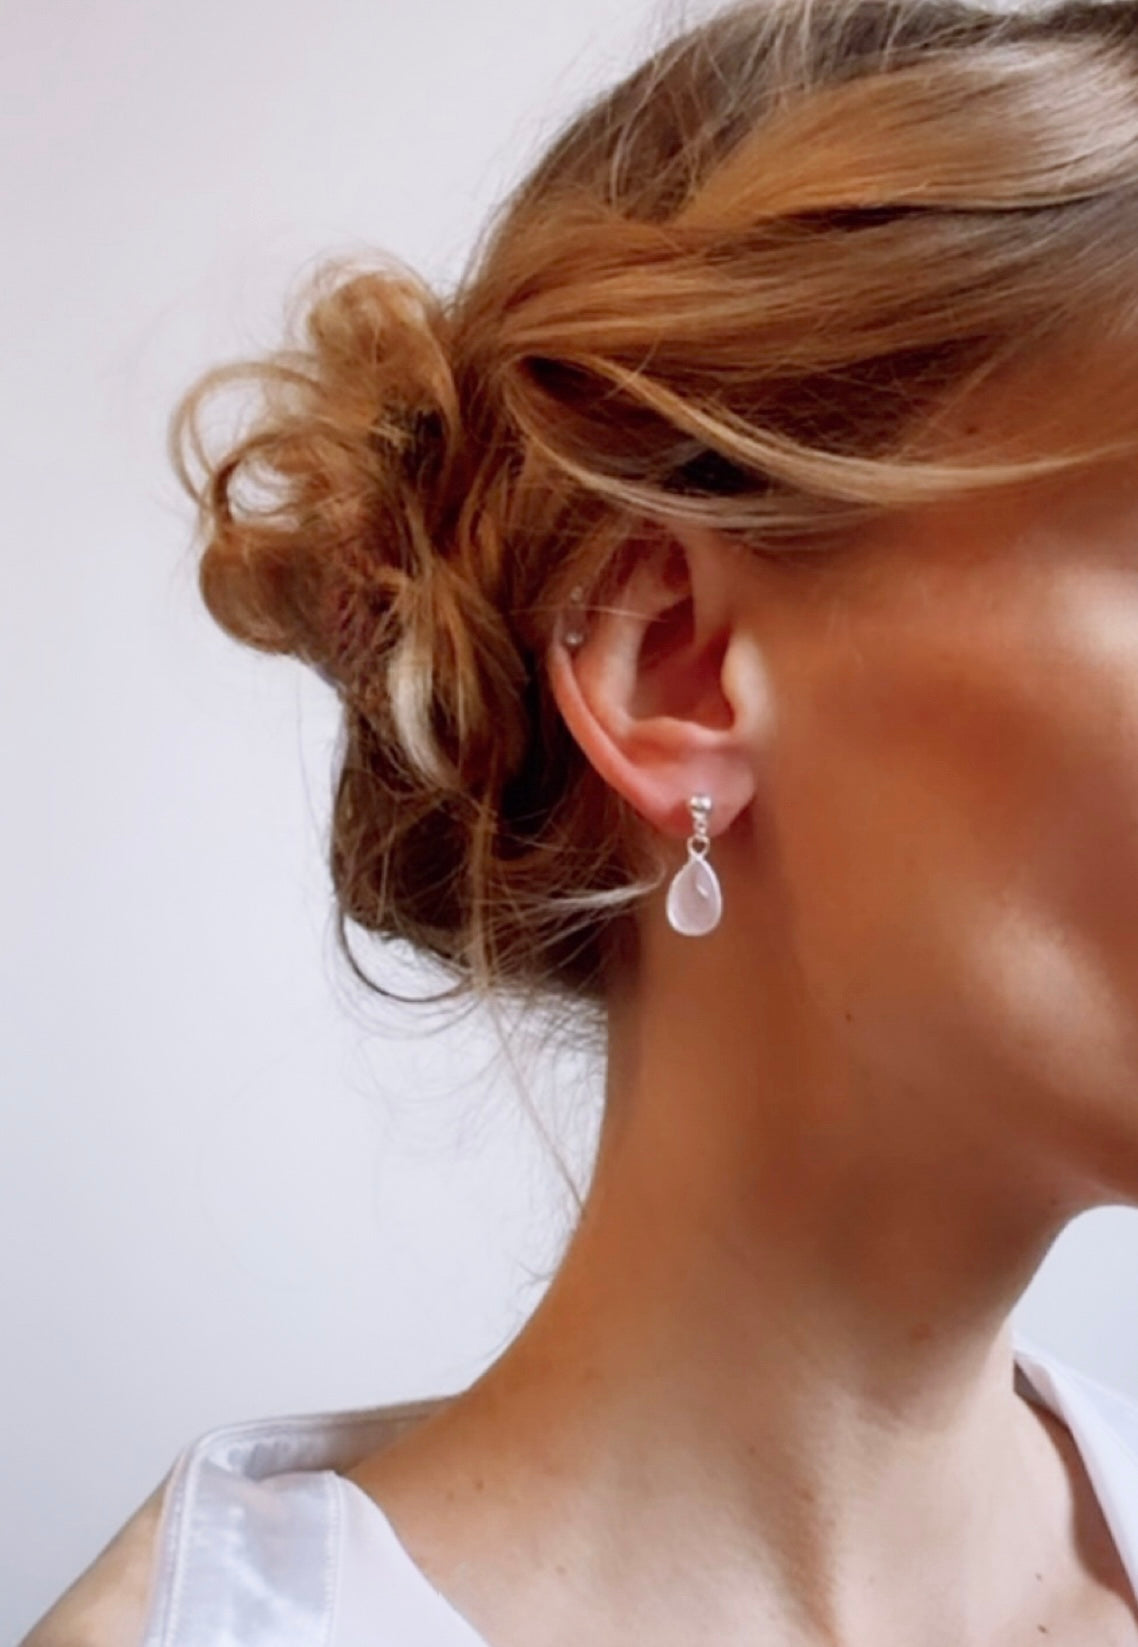 The Bella Earrings